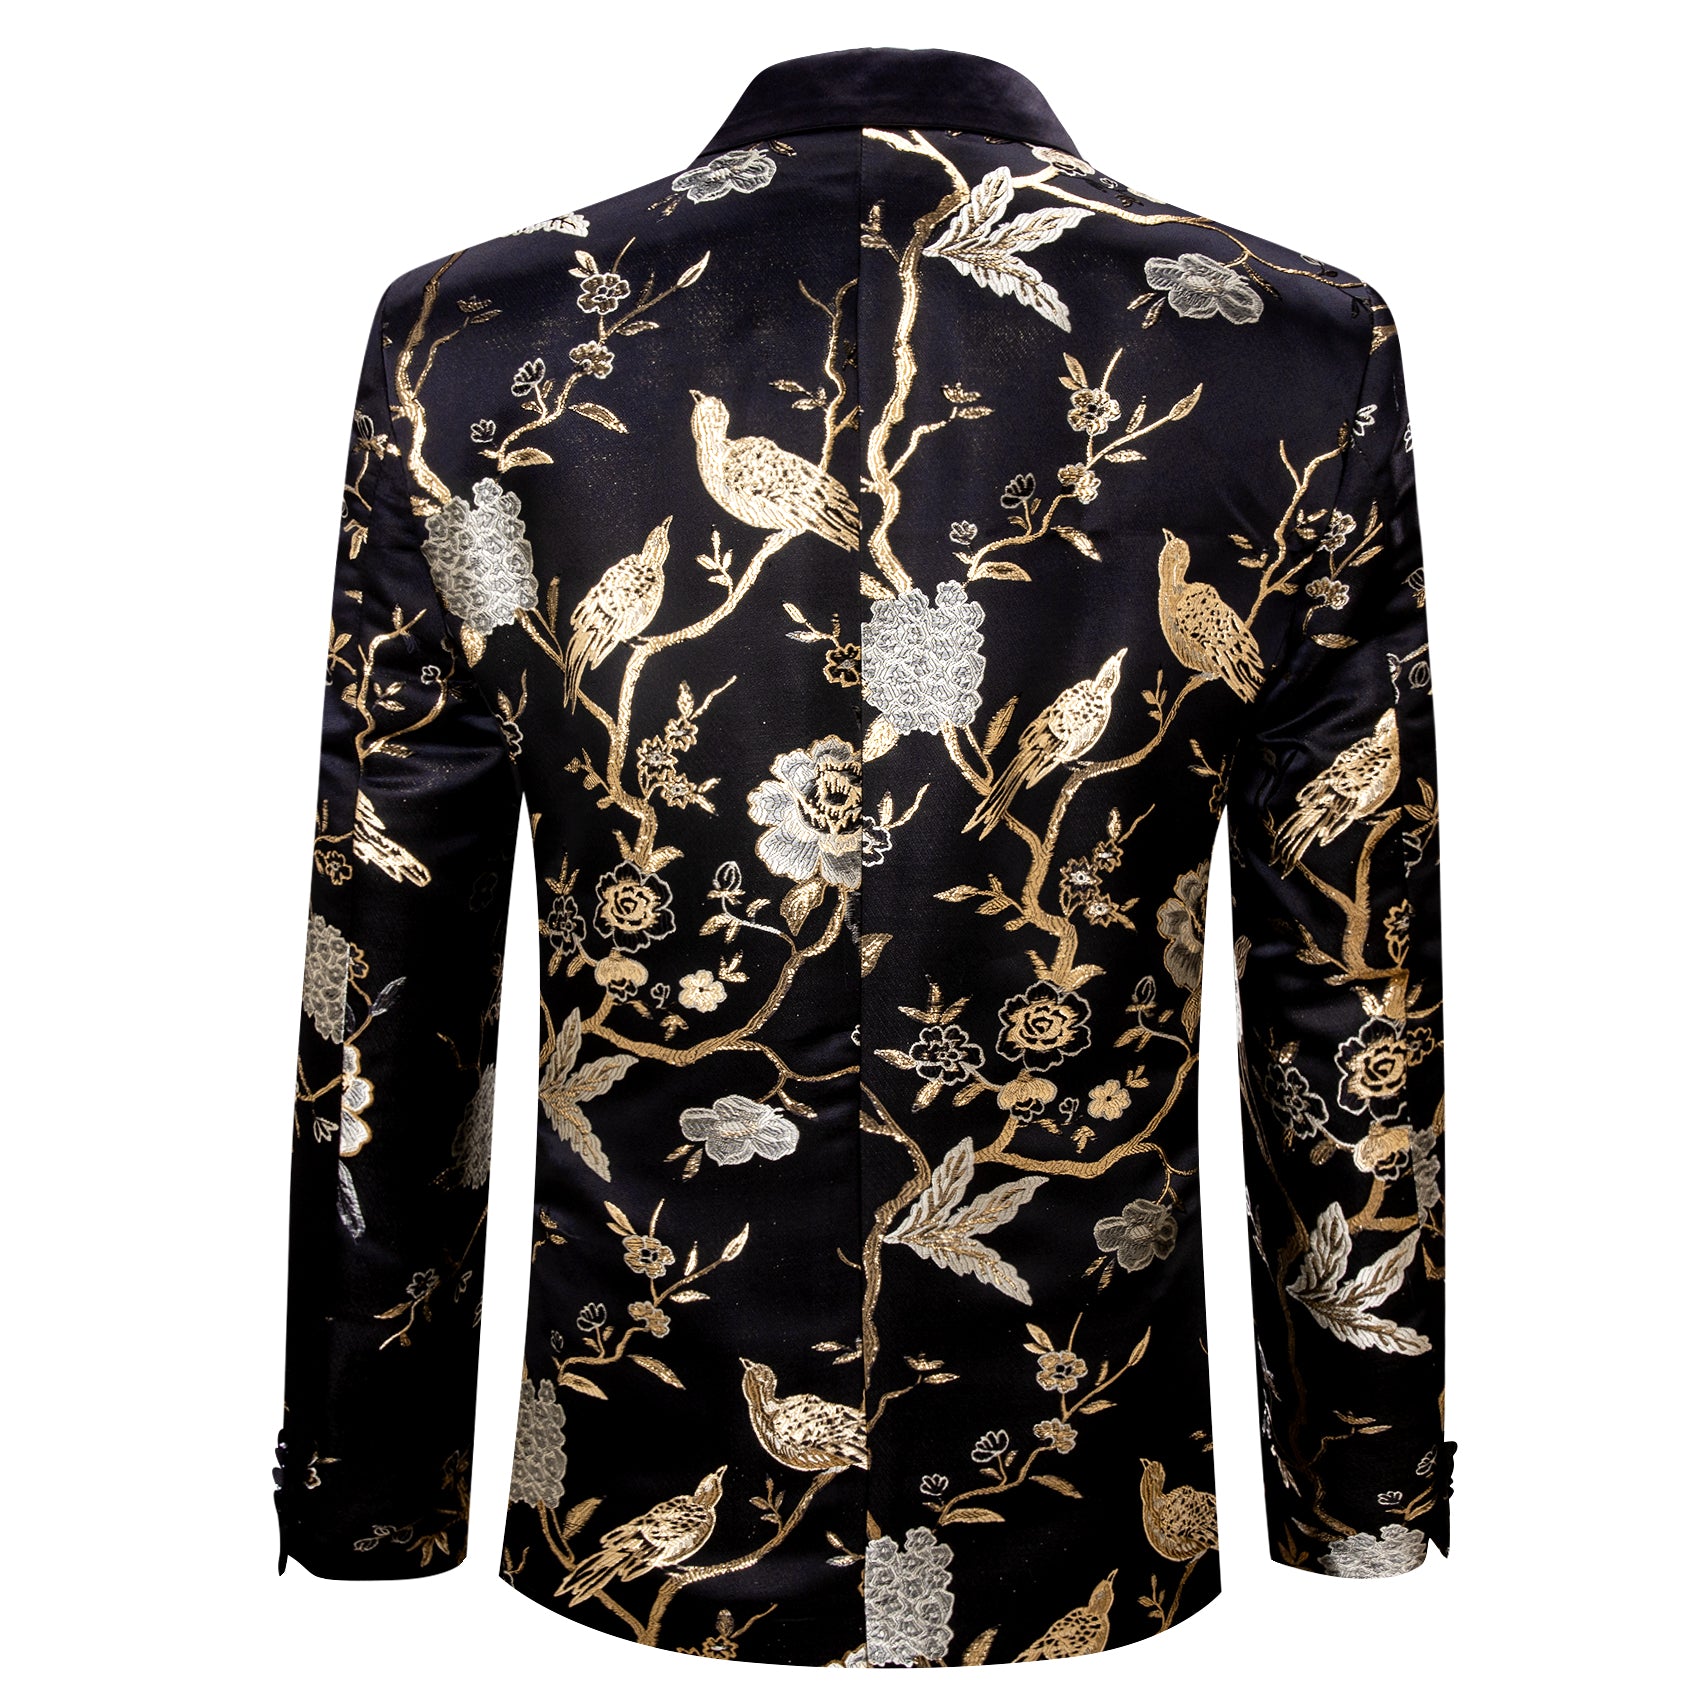 Men's Dress Party Black Gold Floral Suit Jacket Slim One Button Stylis